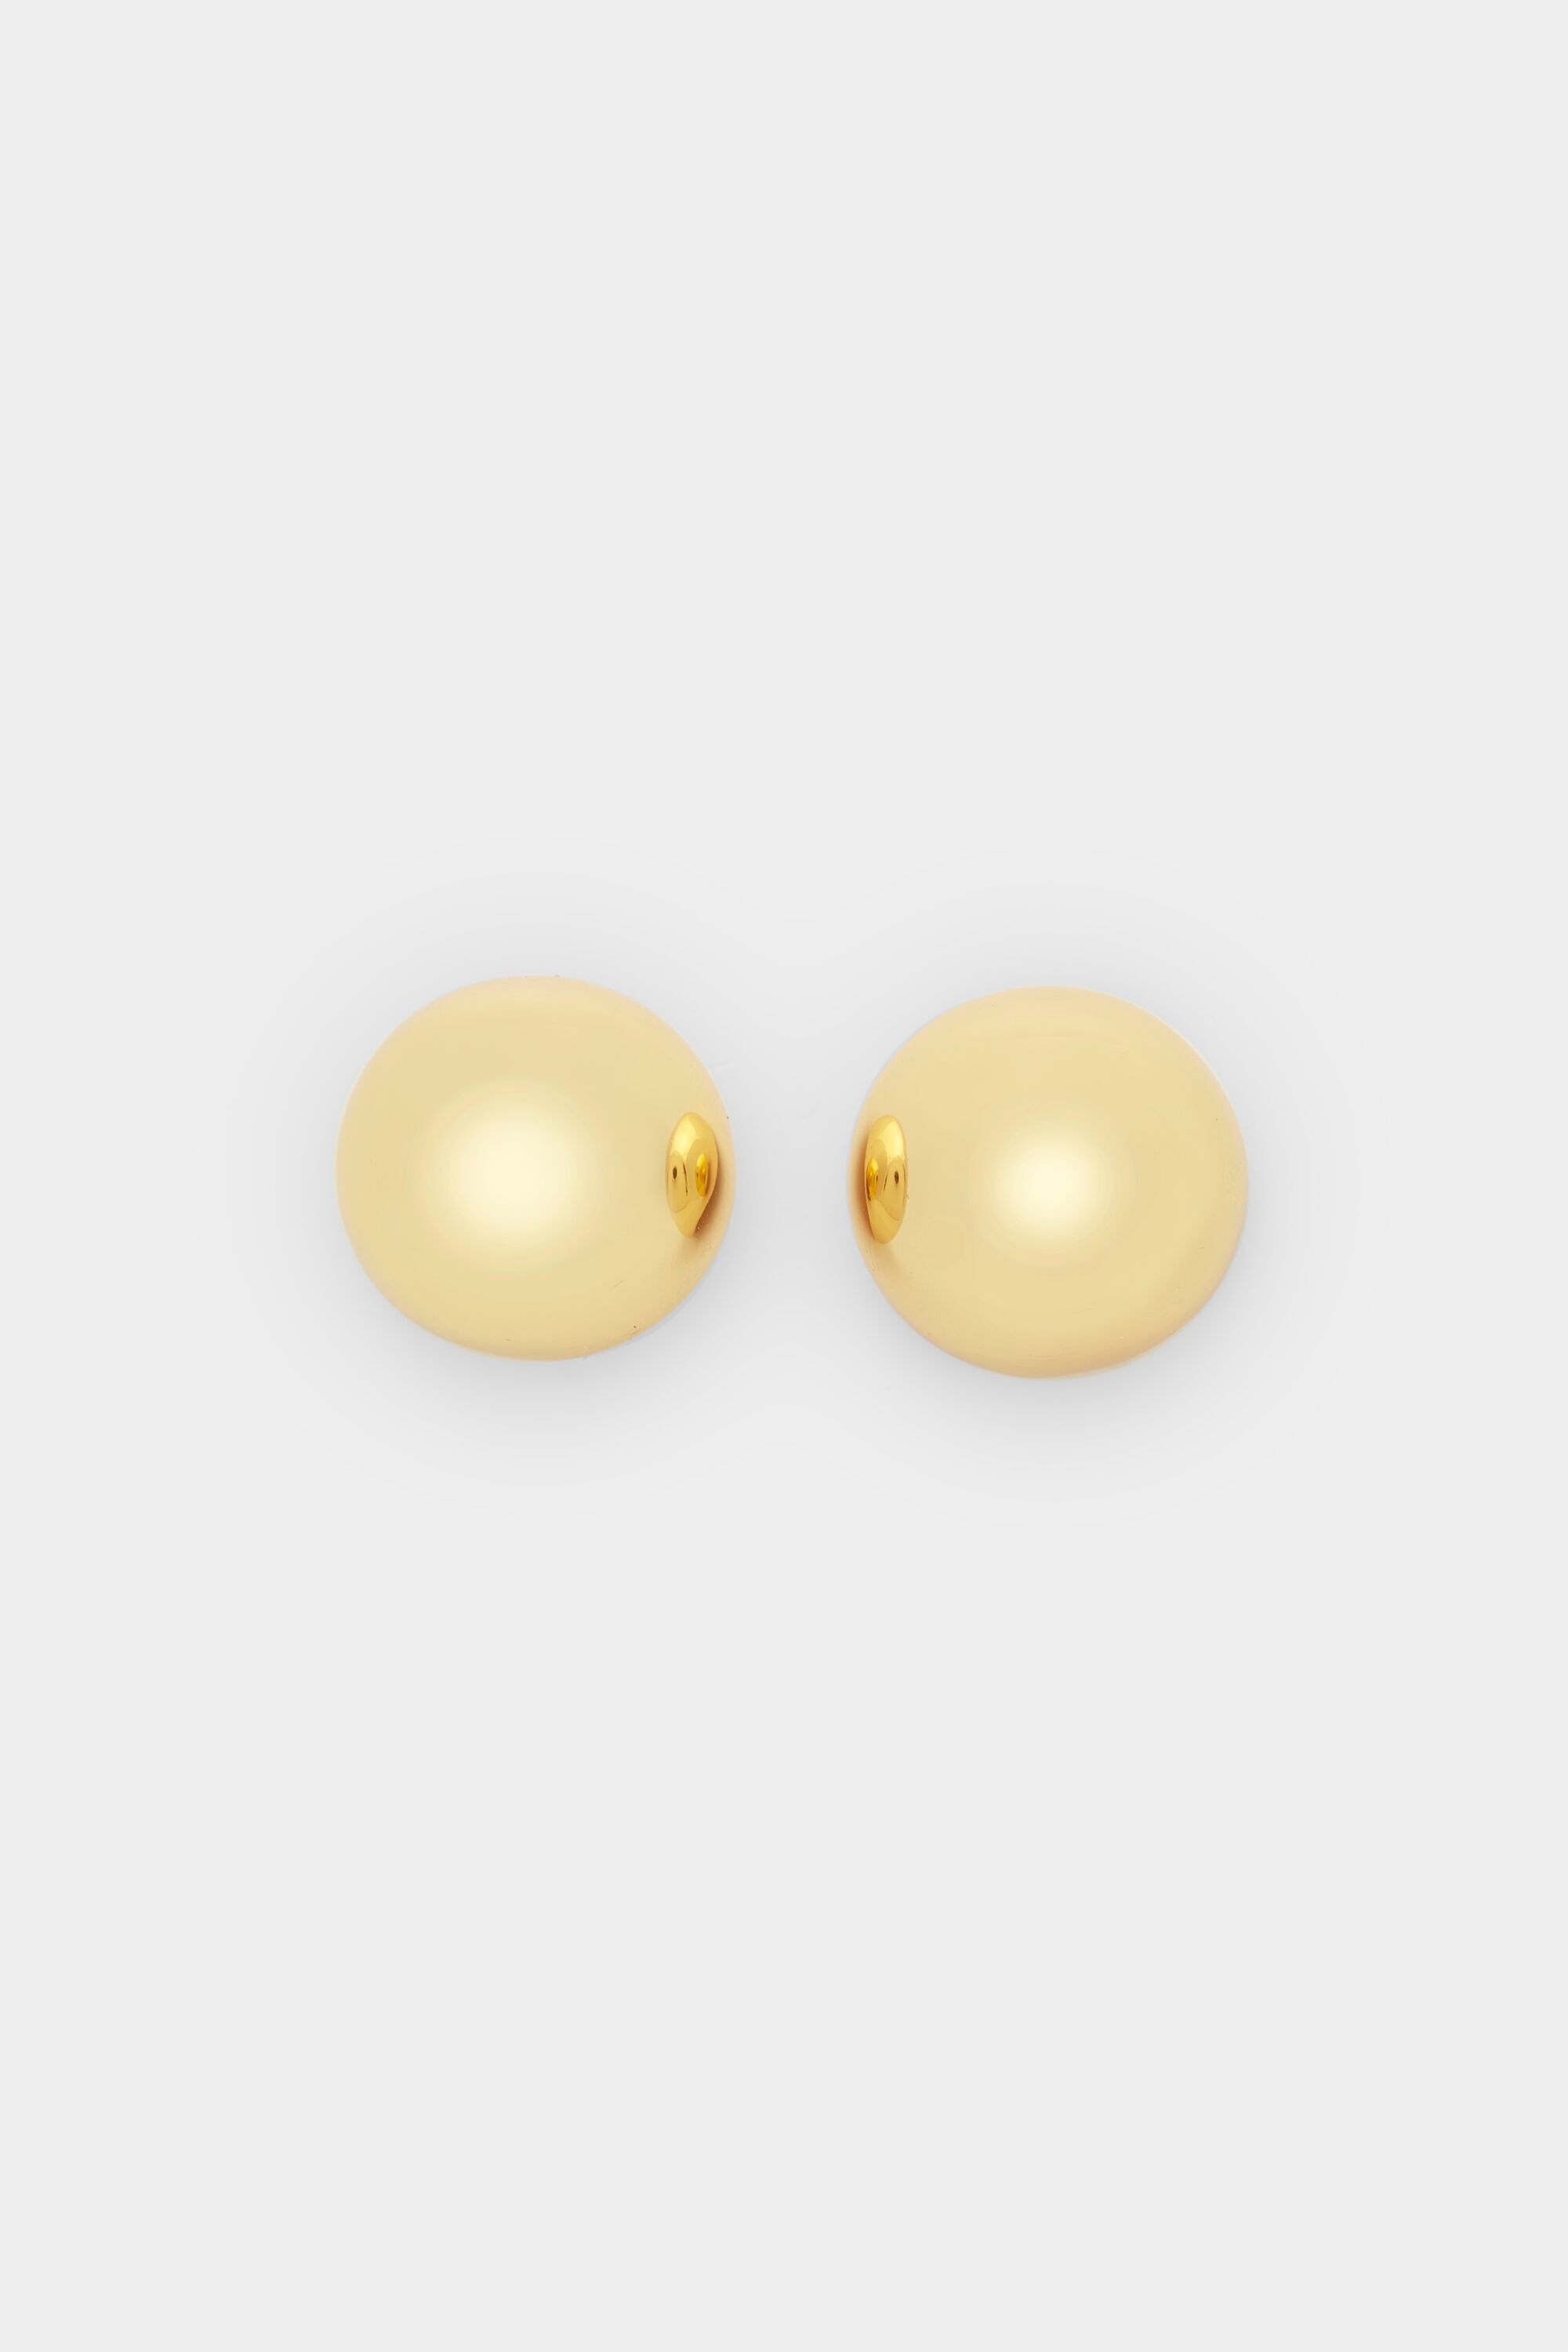 Atomium earrings